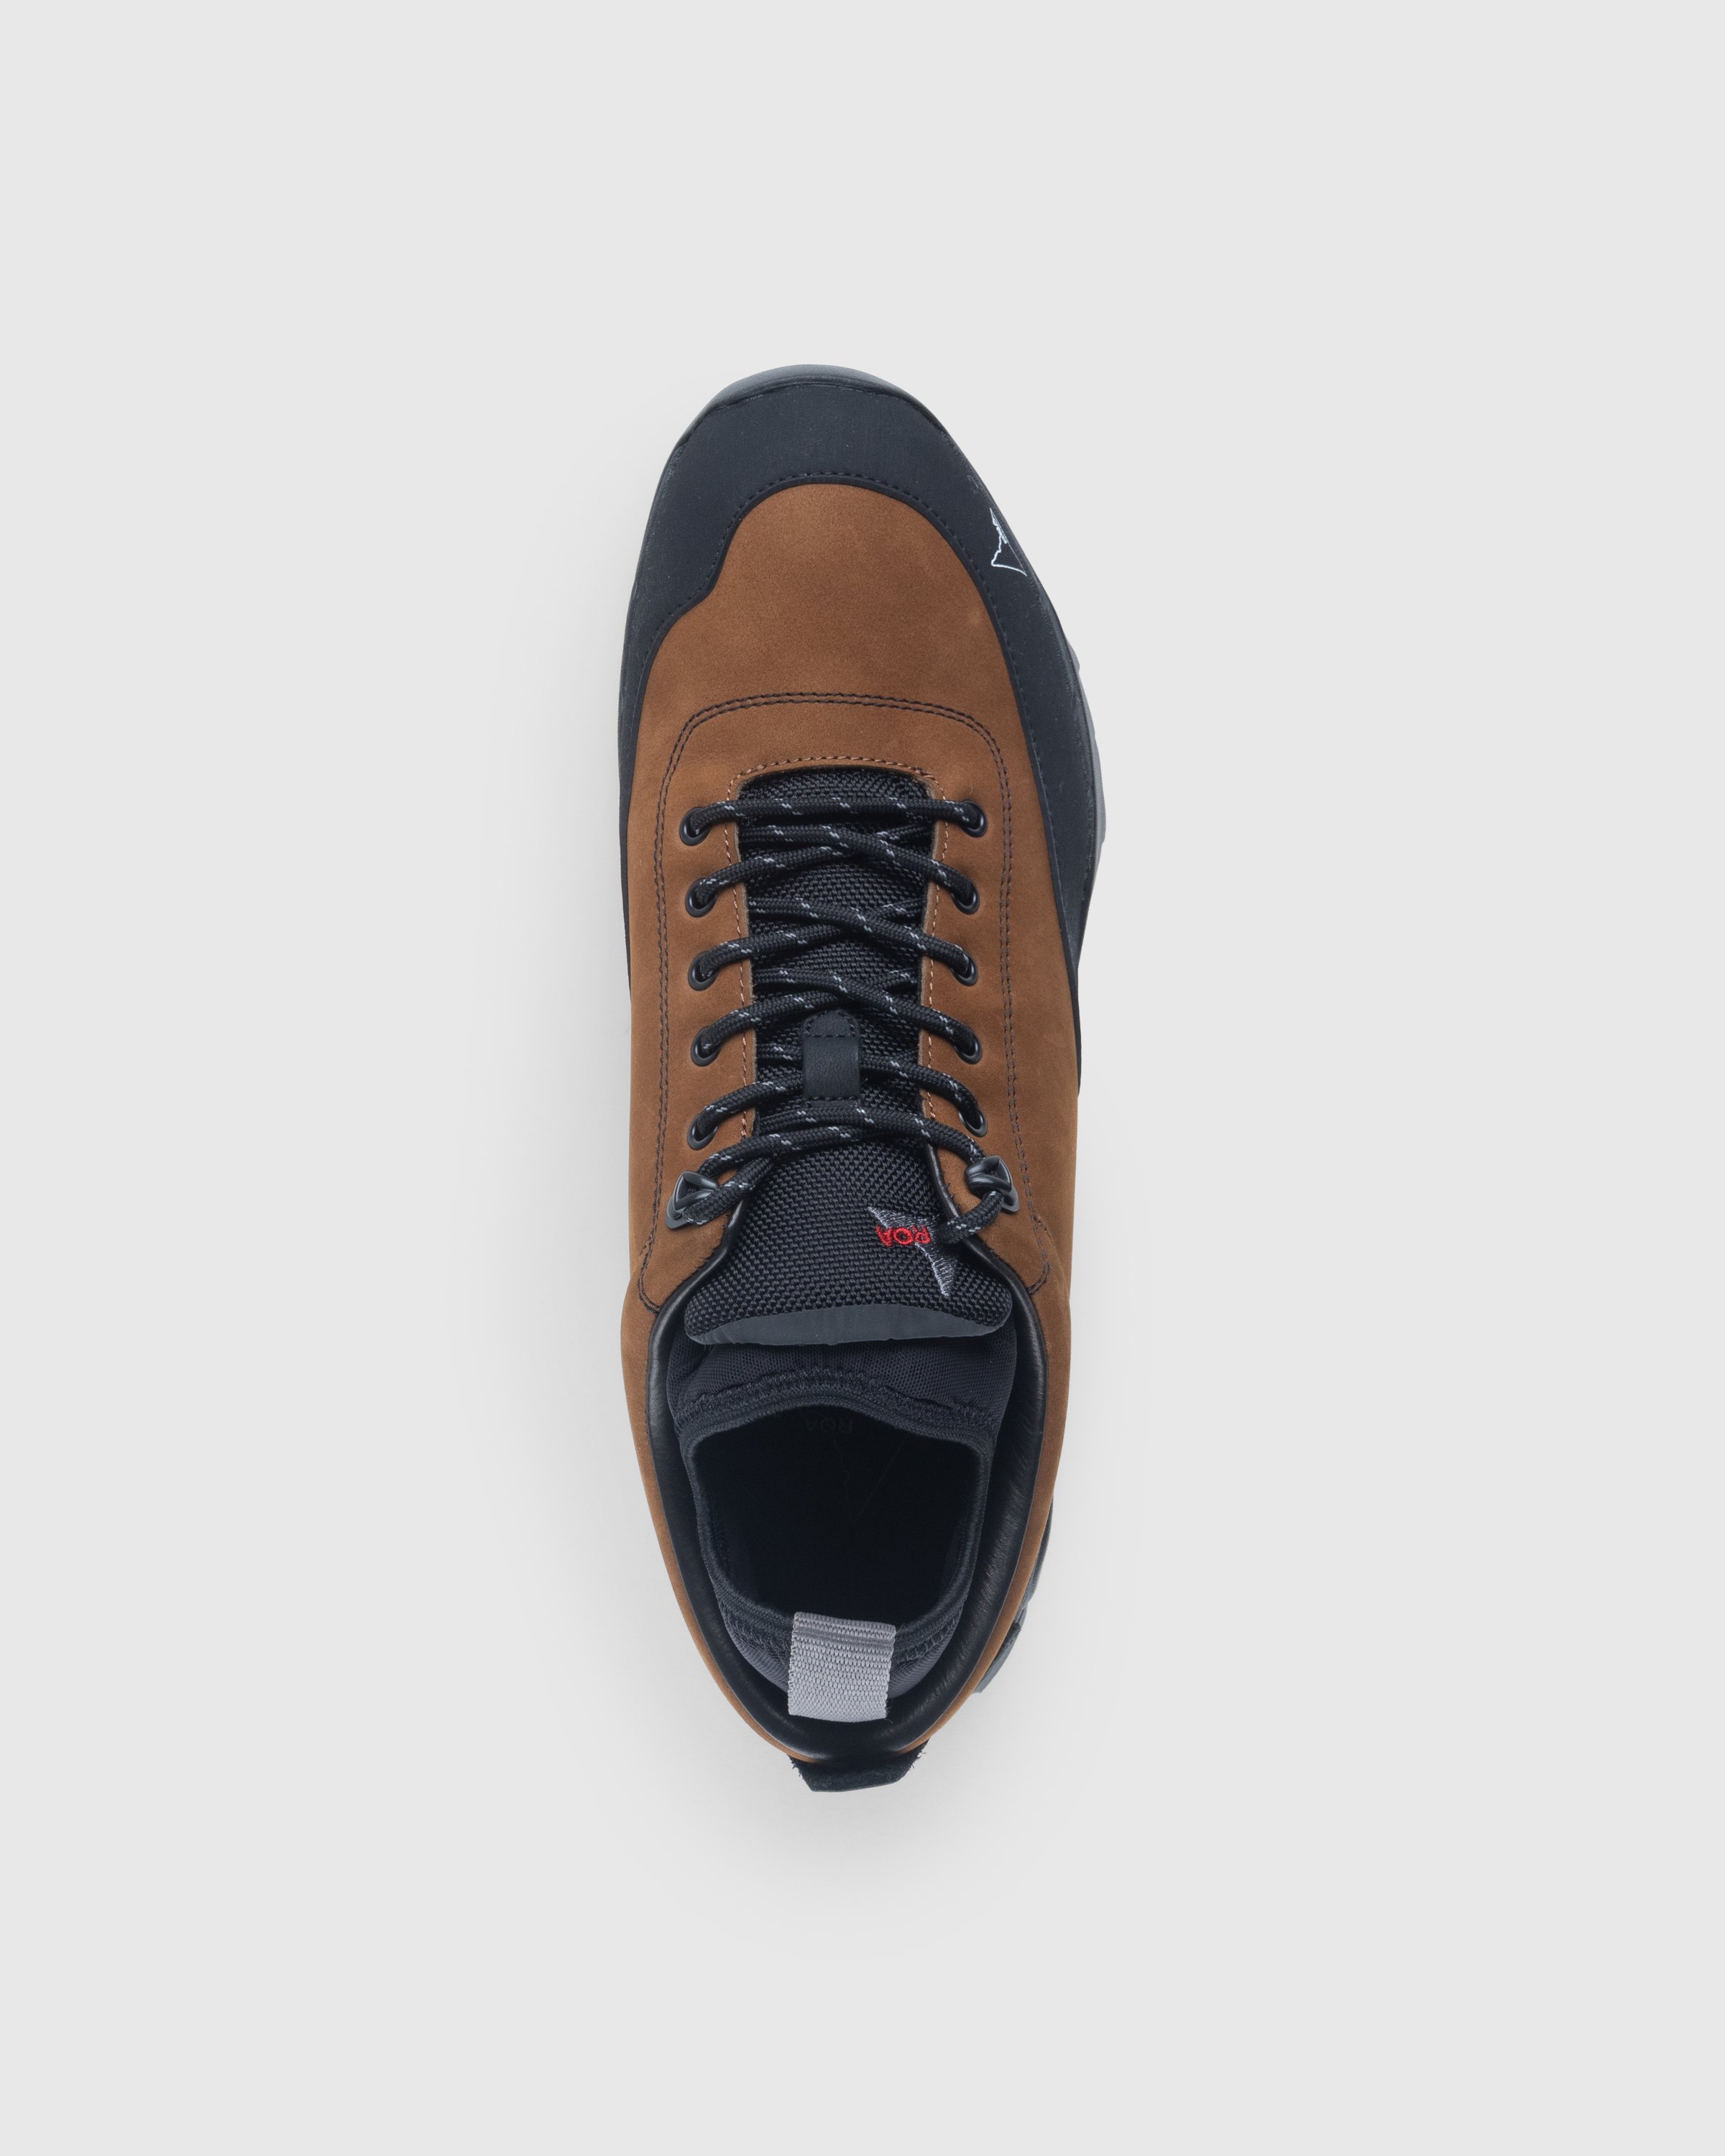 ROA - Neal Sneakers Brown/Black - Footwear - Brown - Image 5